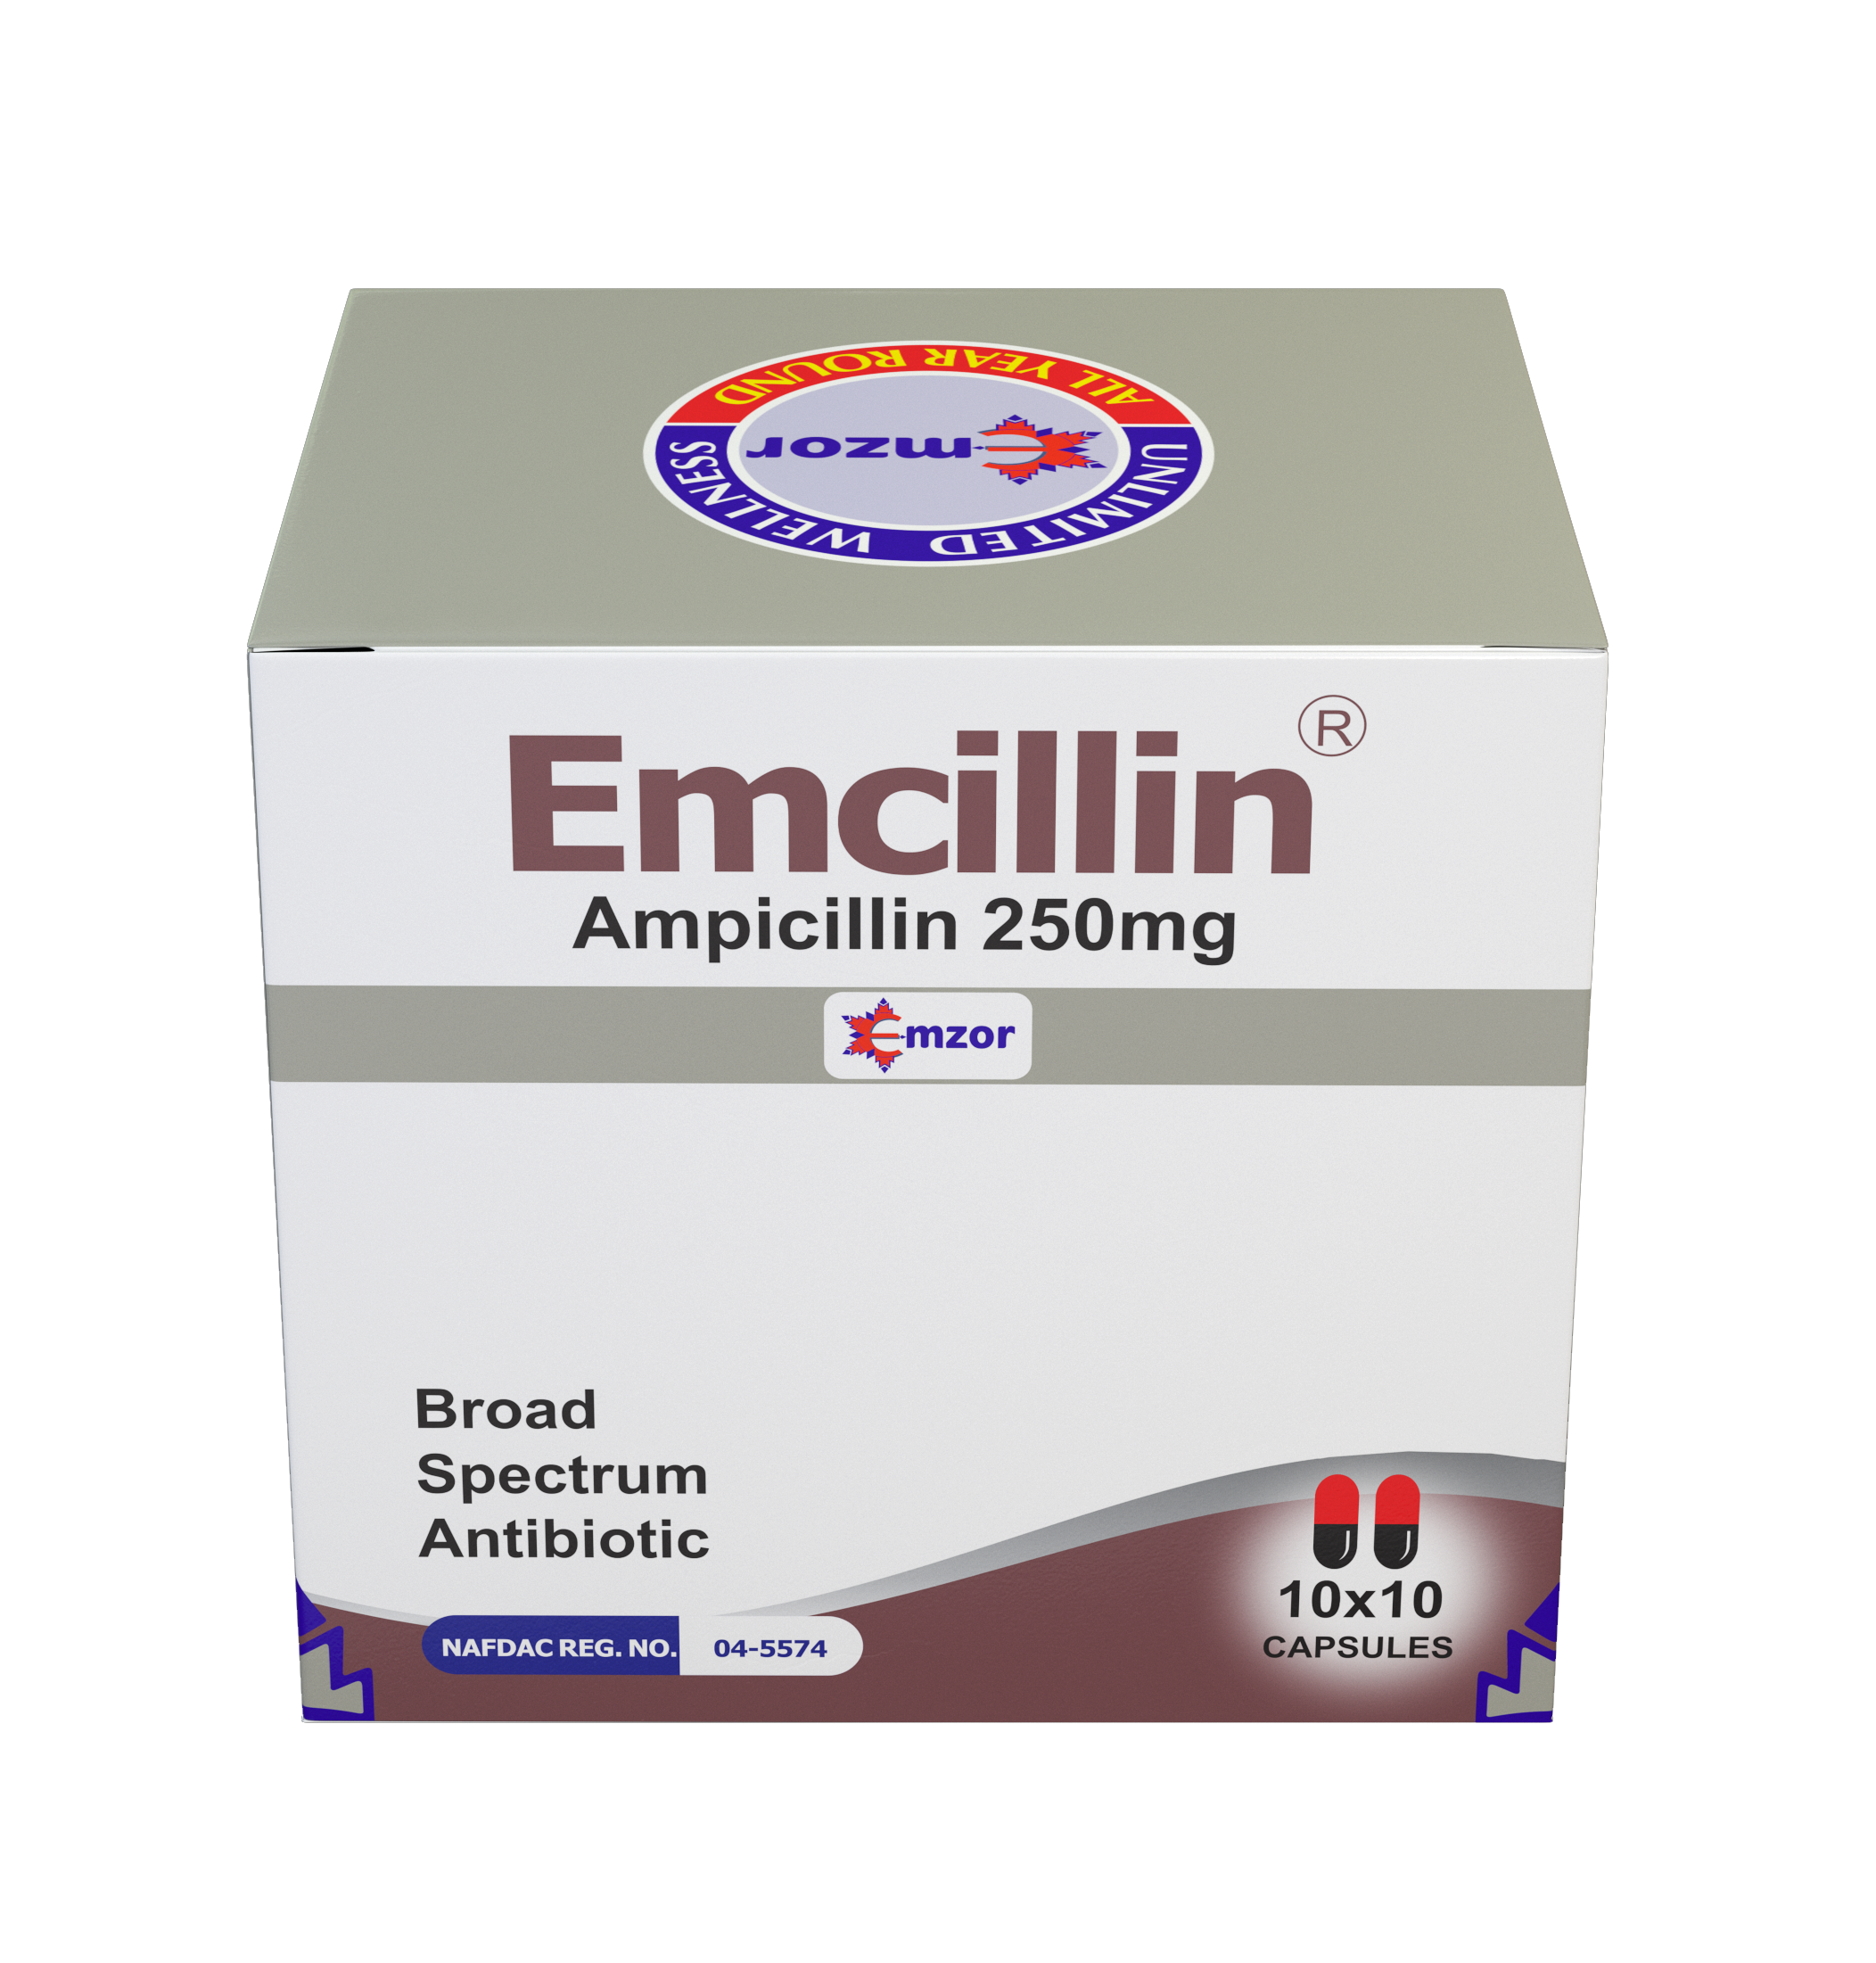 Emcillin Capsules 10*10 -image